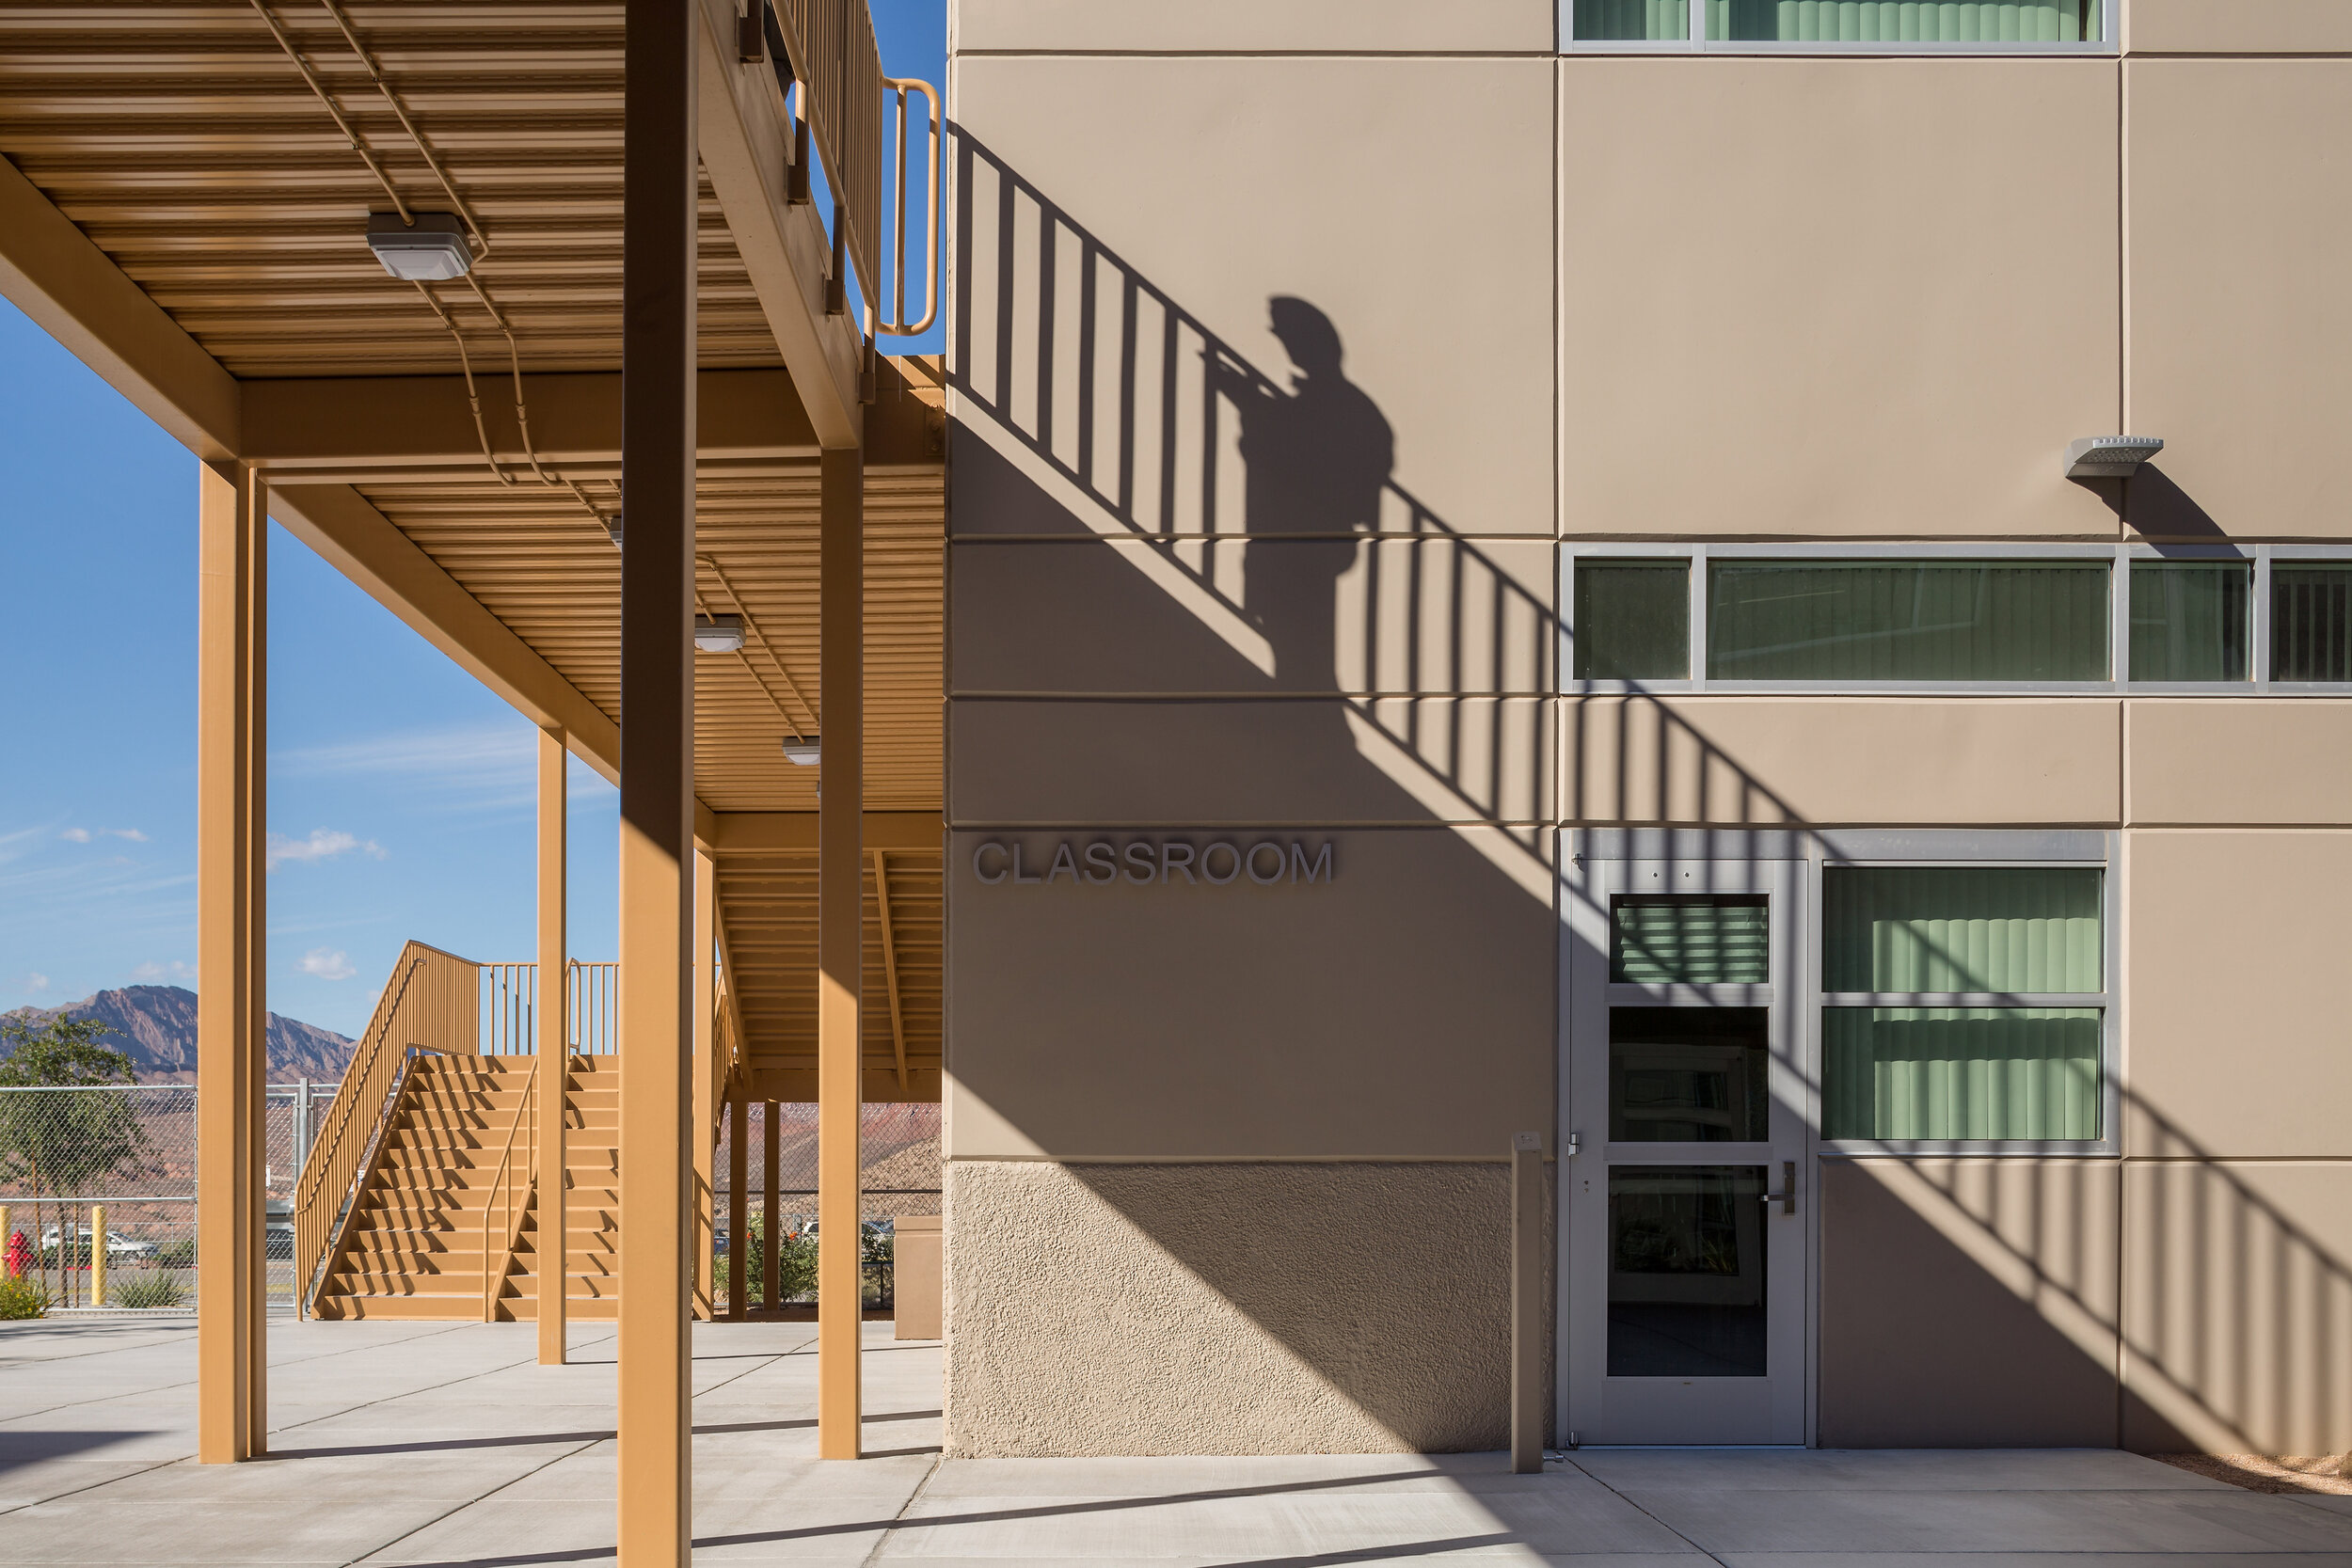 Josh Stevens Elementary School - Architectural Photographer Michael Tessler - 24.jpg